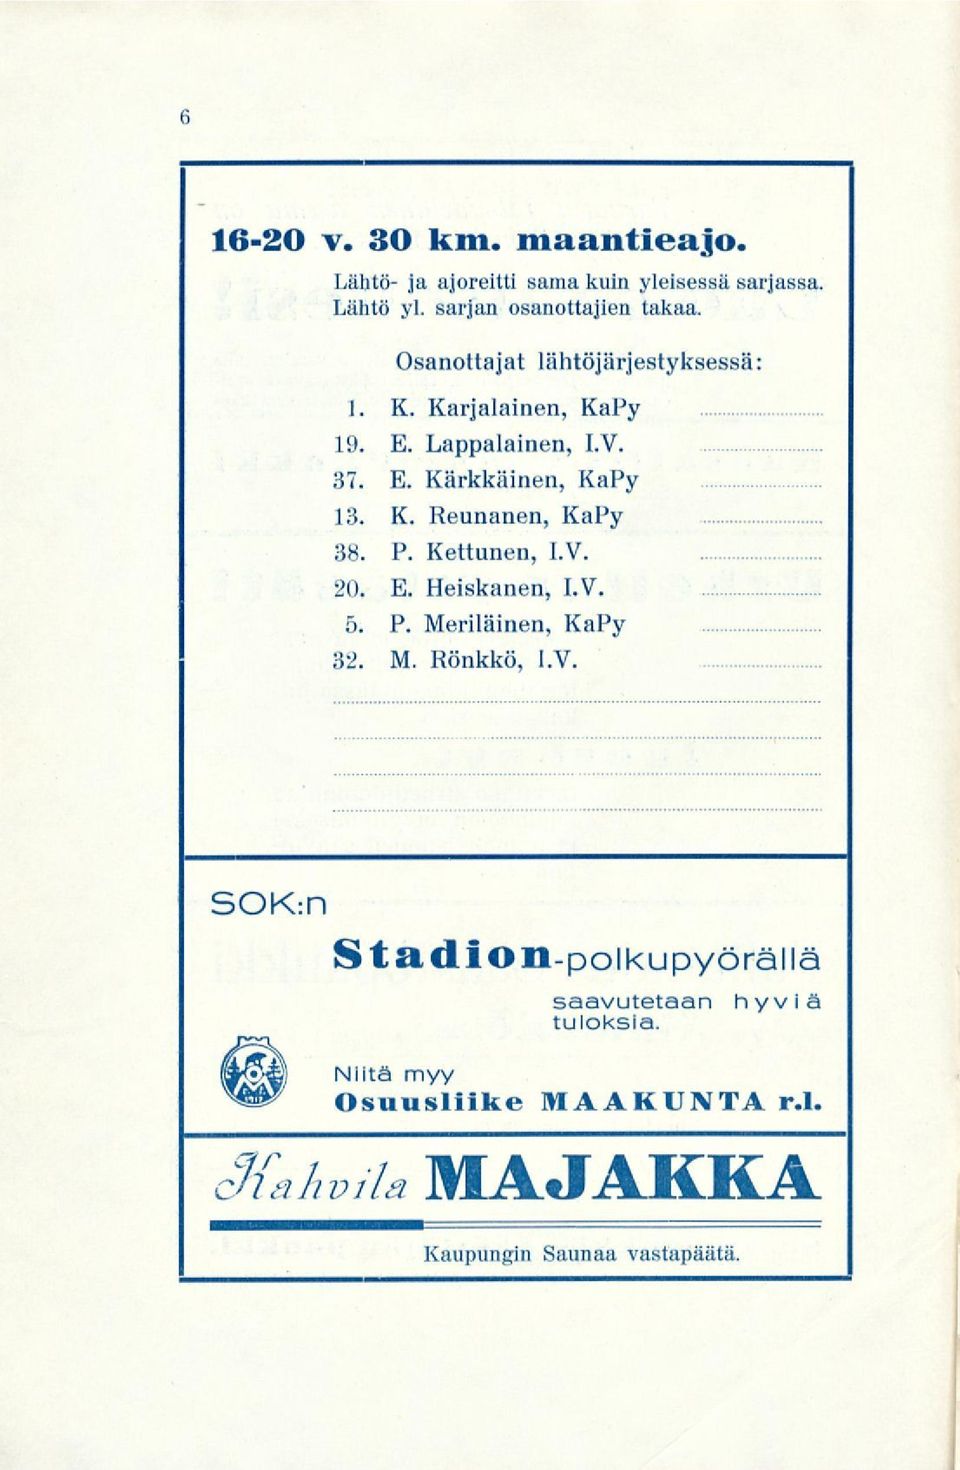 P. Kettunen, I.V. 20. E. Heiskanen, I.V. 5. P. Meriläinen, KaPy 32. M. Rönkkö, I.V. SOK:n Stadion-polkupyörällä saavutetaan tuloksia.